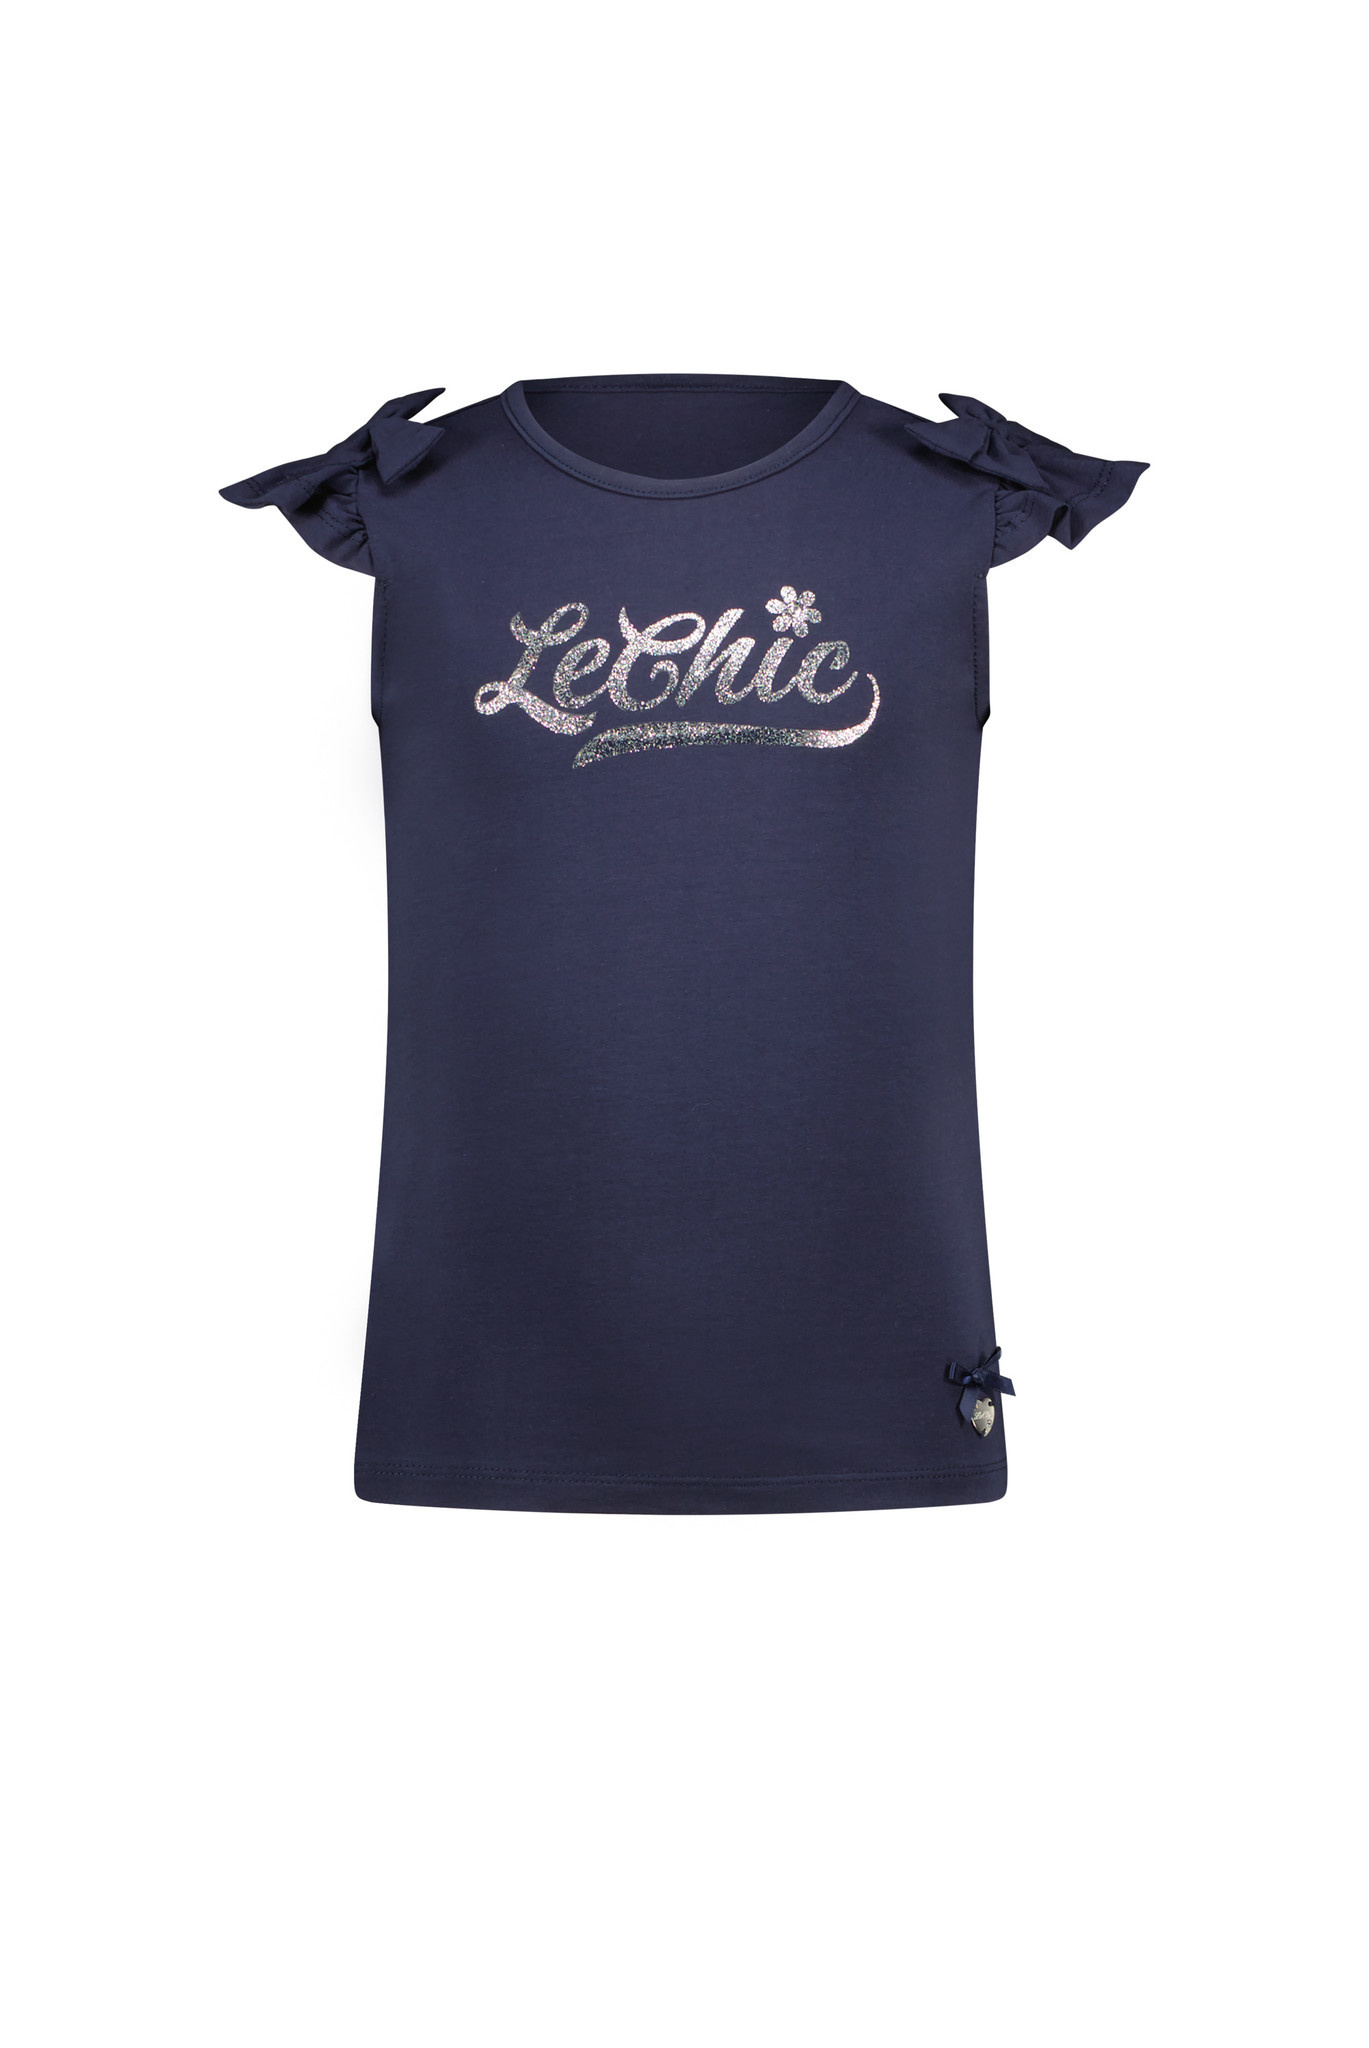 Le Chic Meisjes t-shirt logo - Nem - Navy blauw